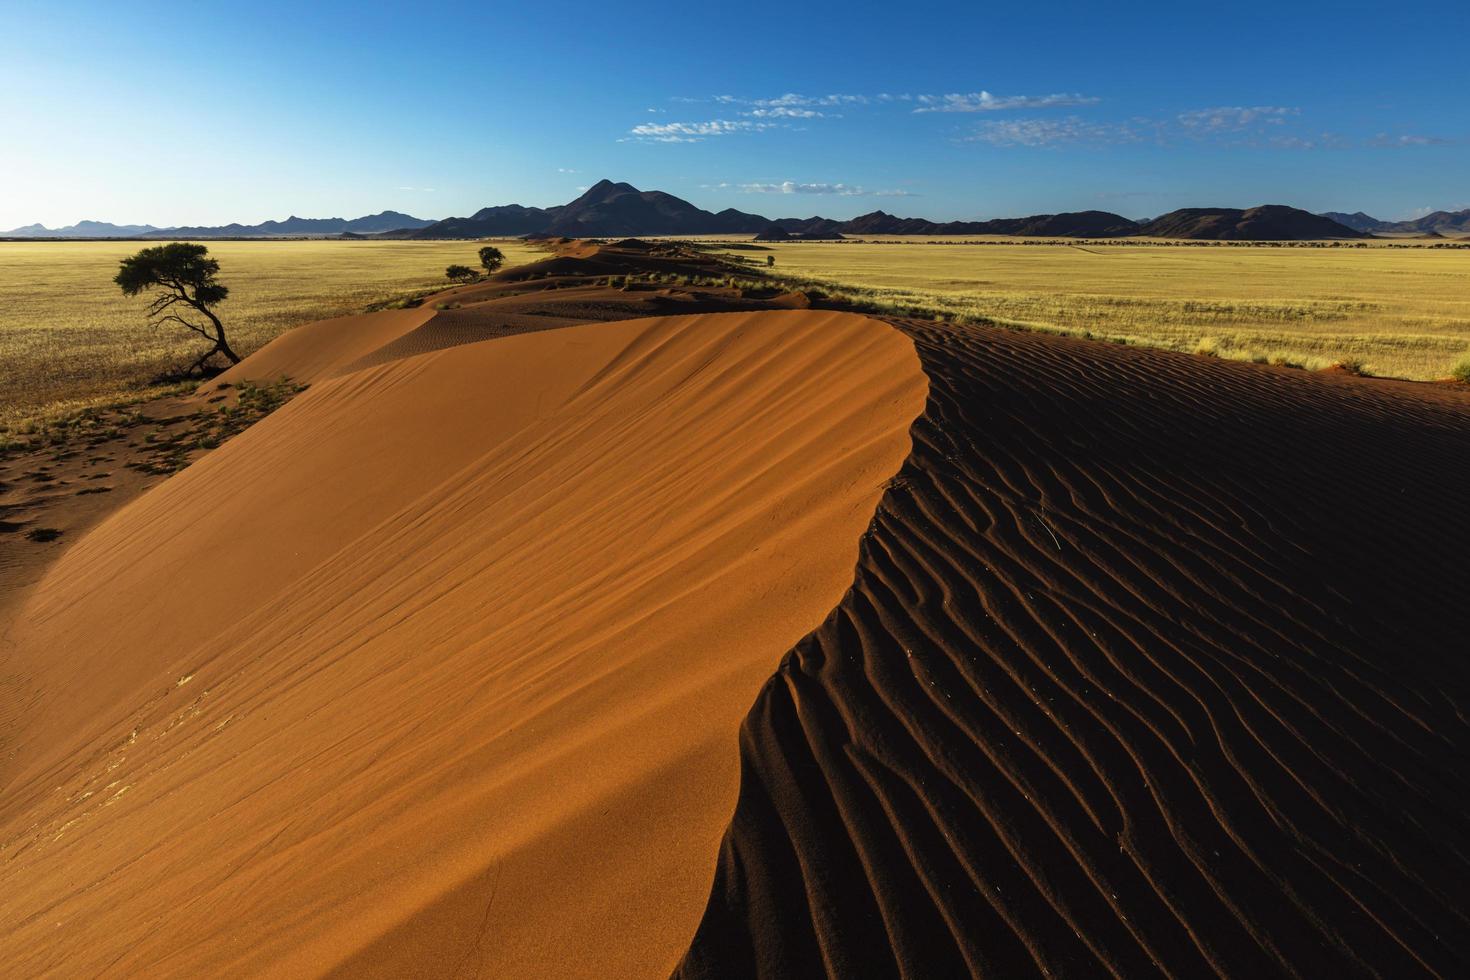 patrones barridos por el viento en una duna de arena roja foto